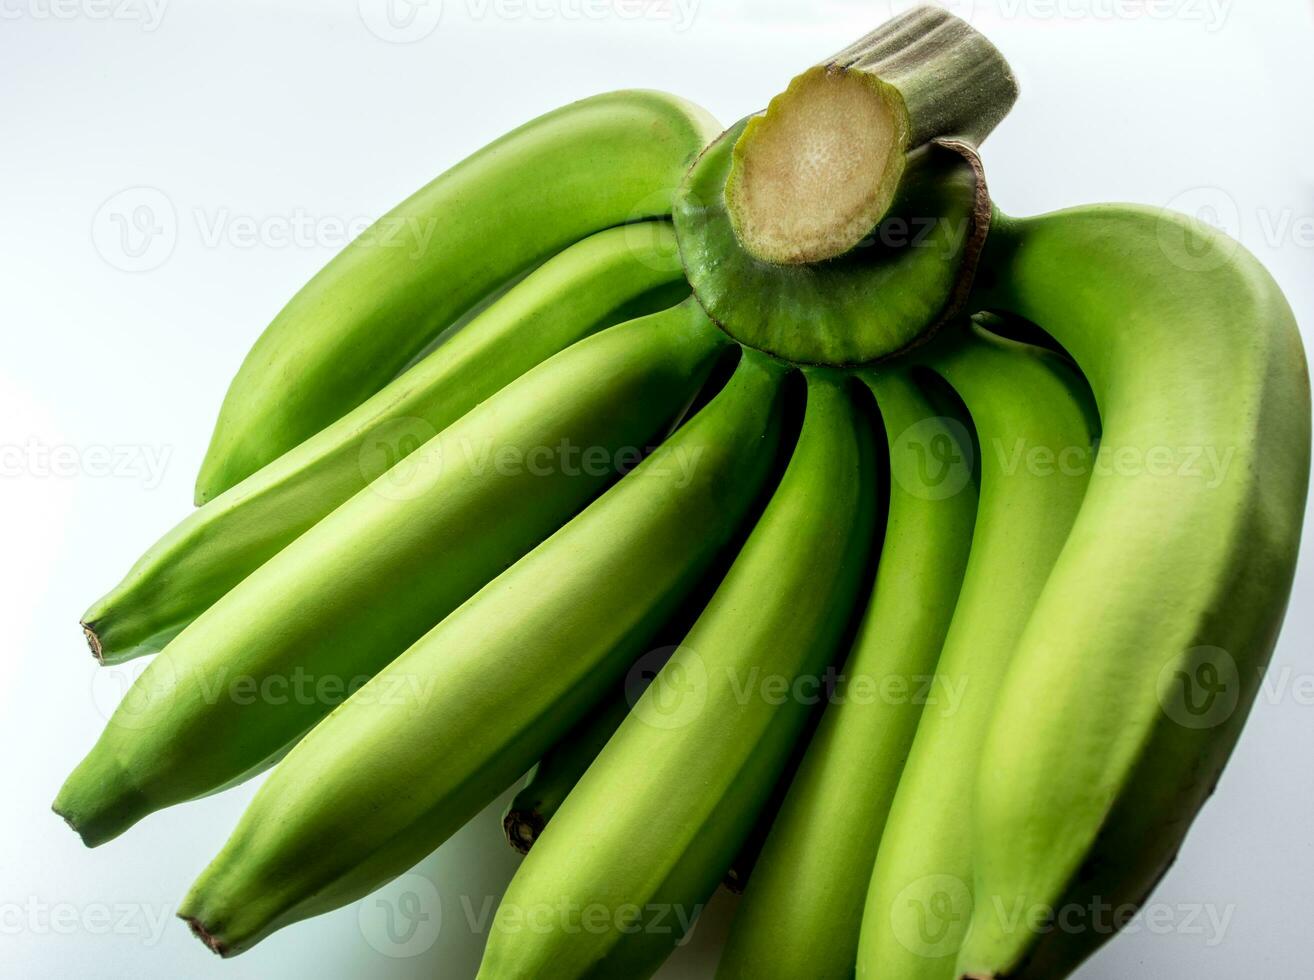 Raw Cavendish banana Isolated on white background photo